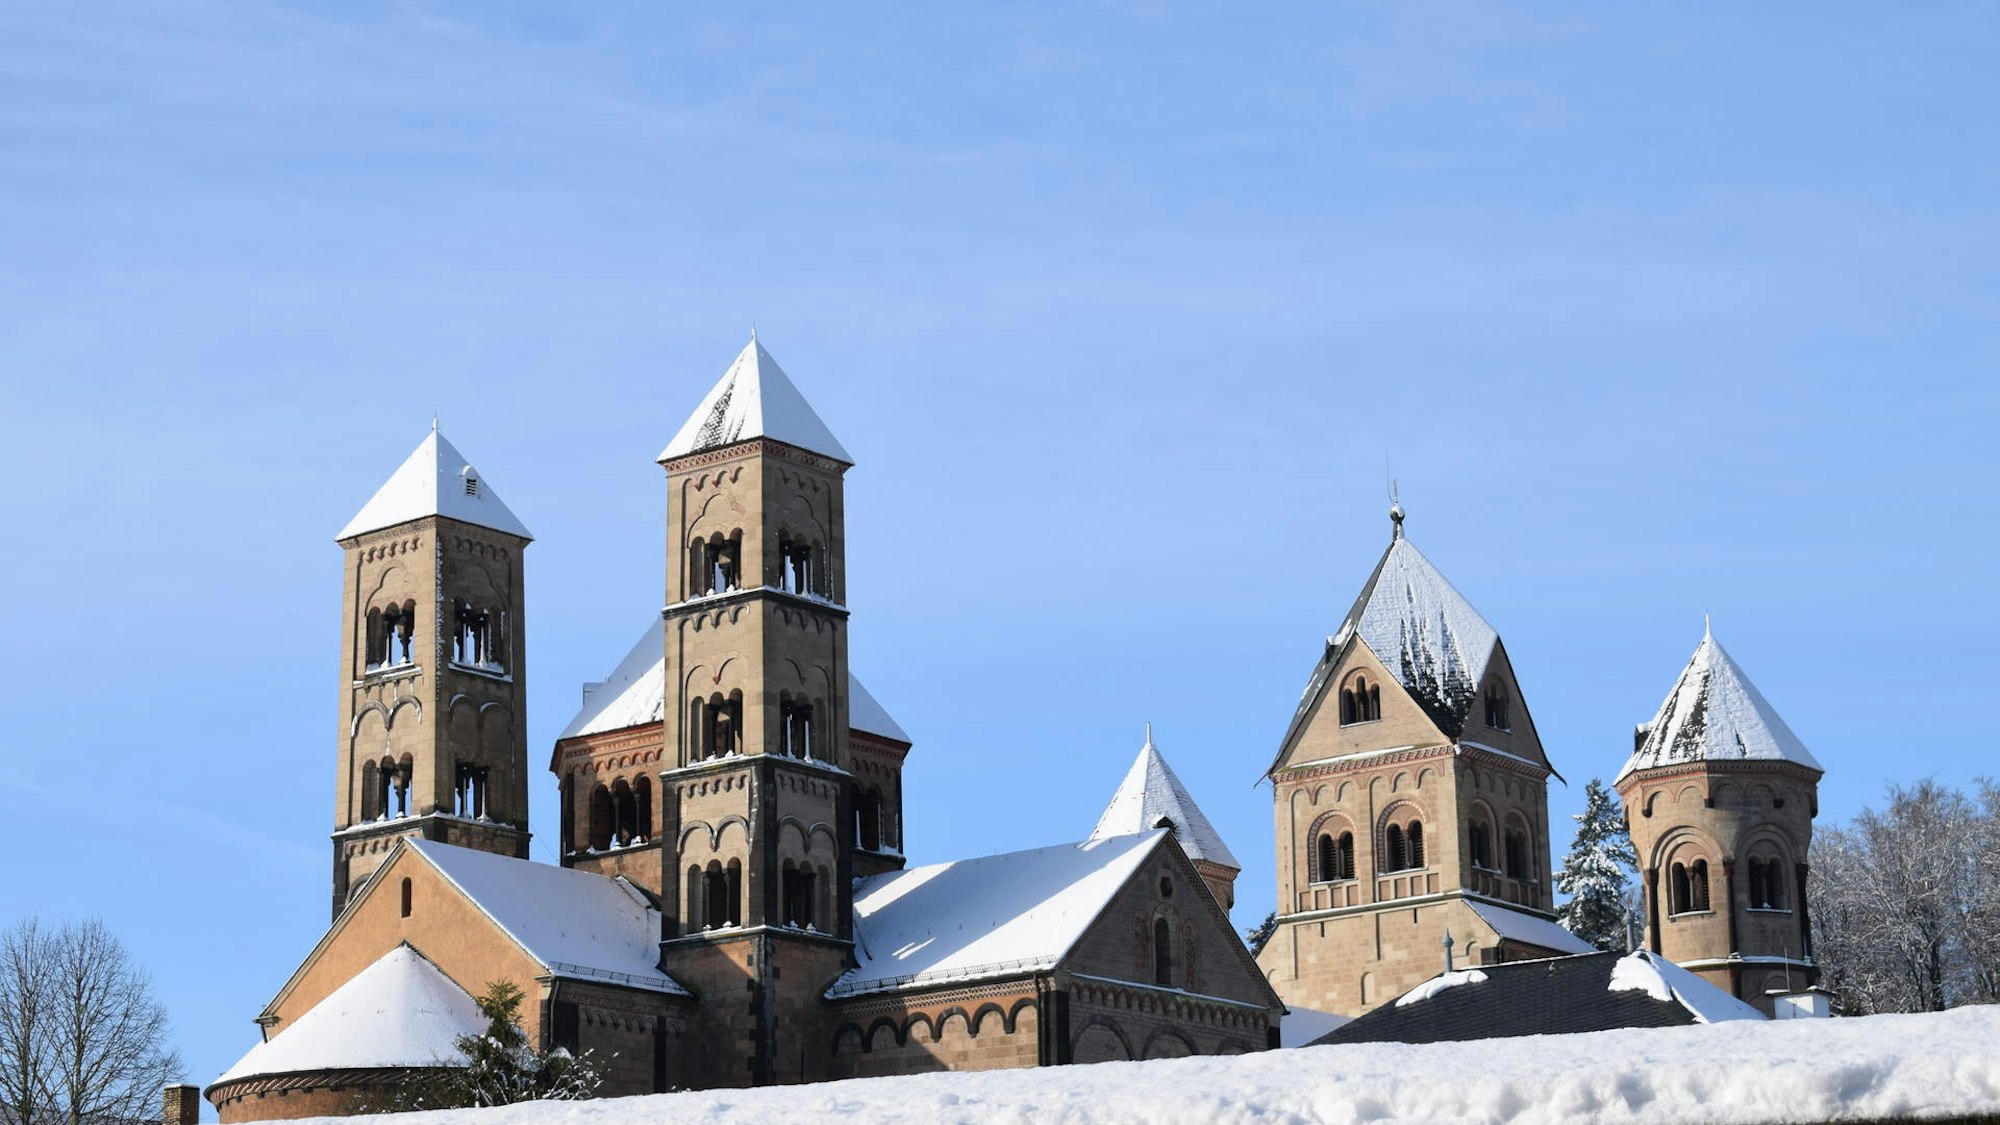 Kloster Maria Laach mit verschneiten Dächern.